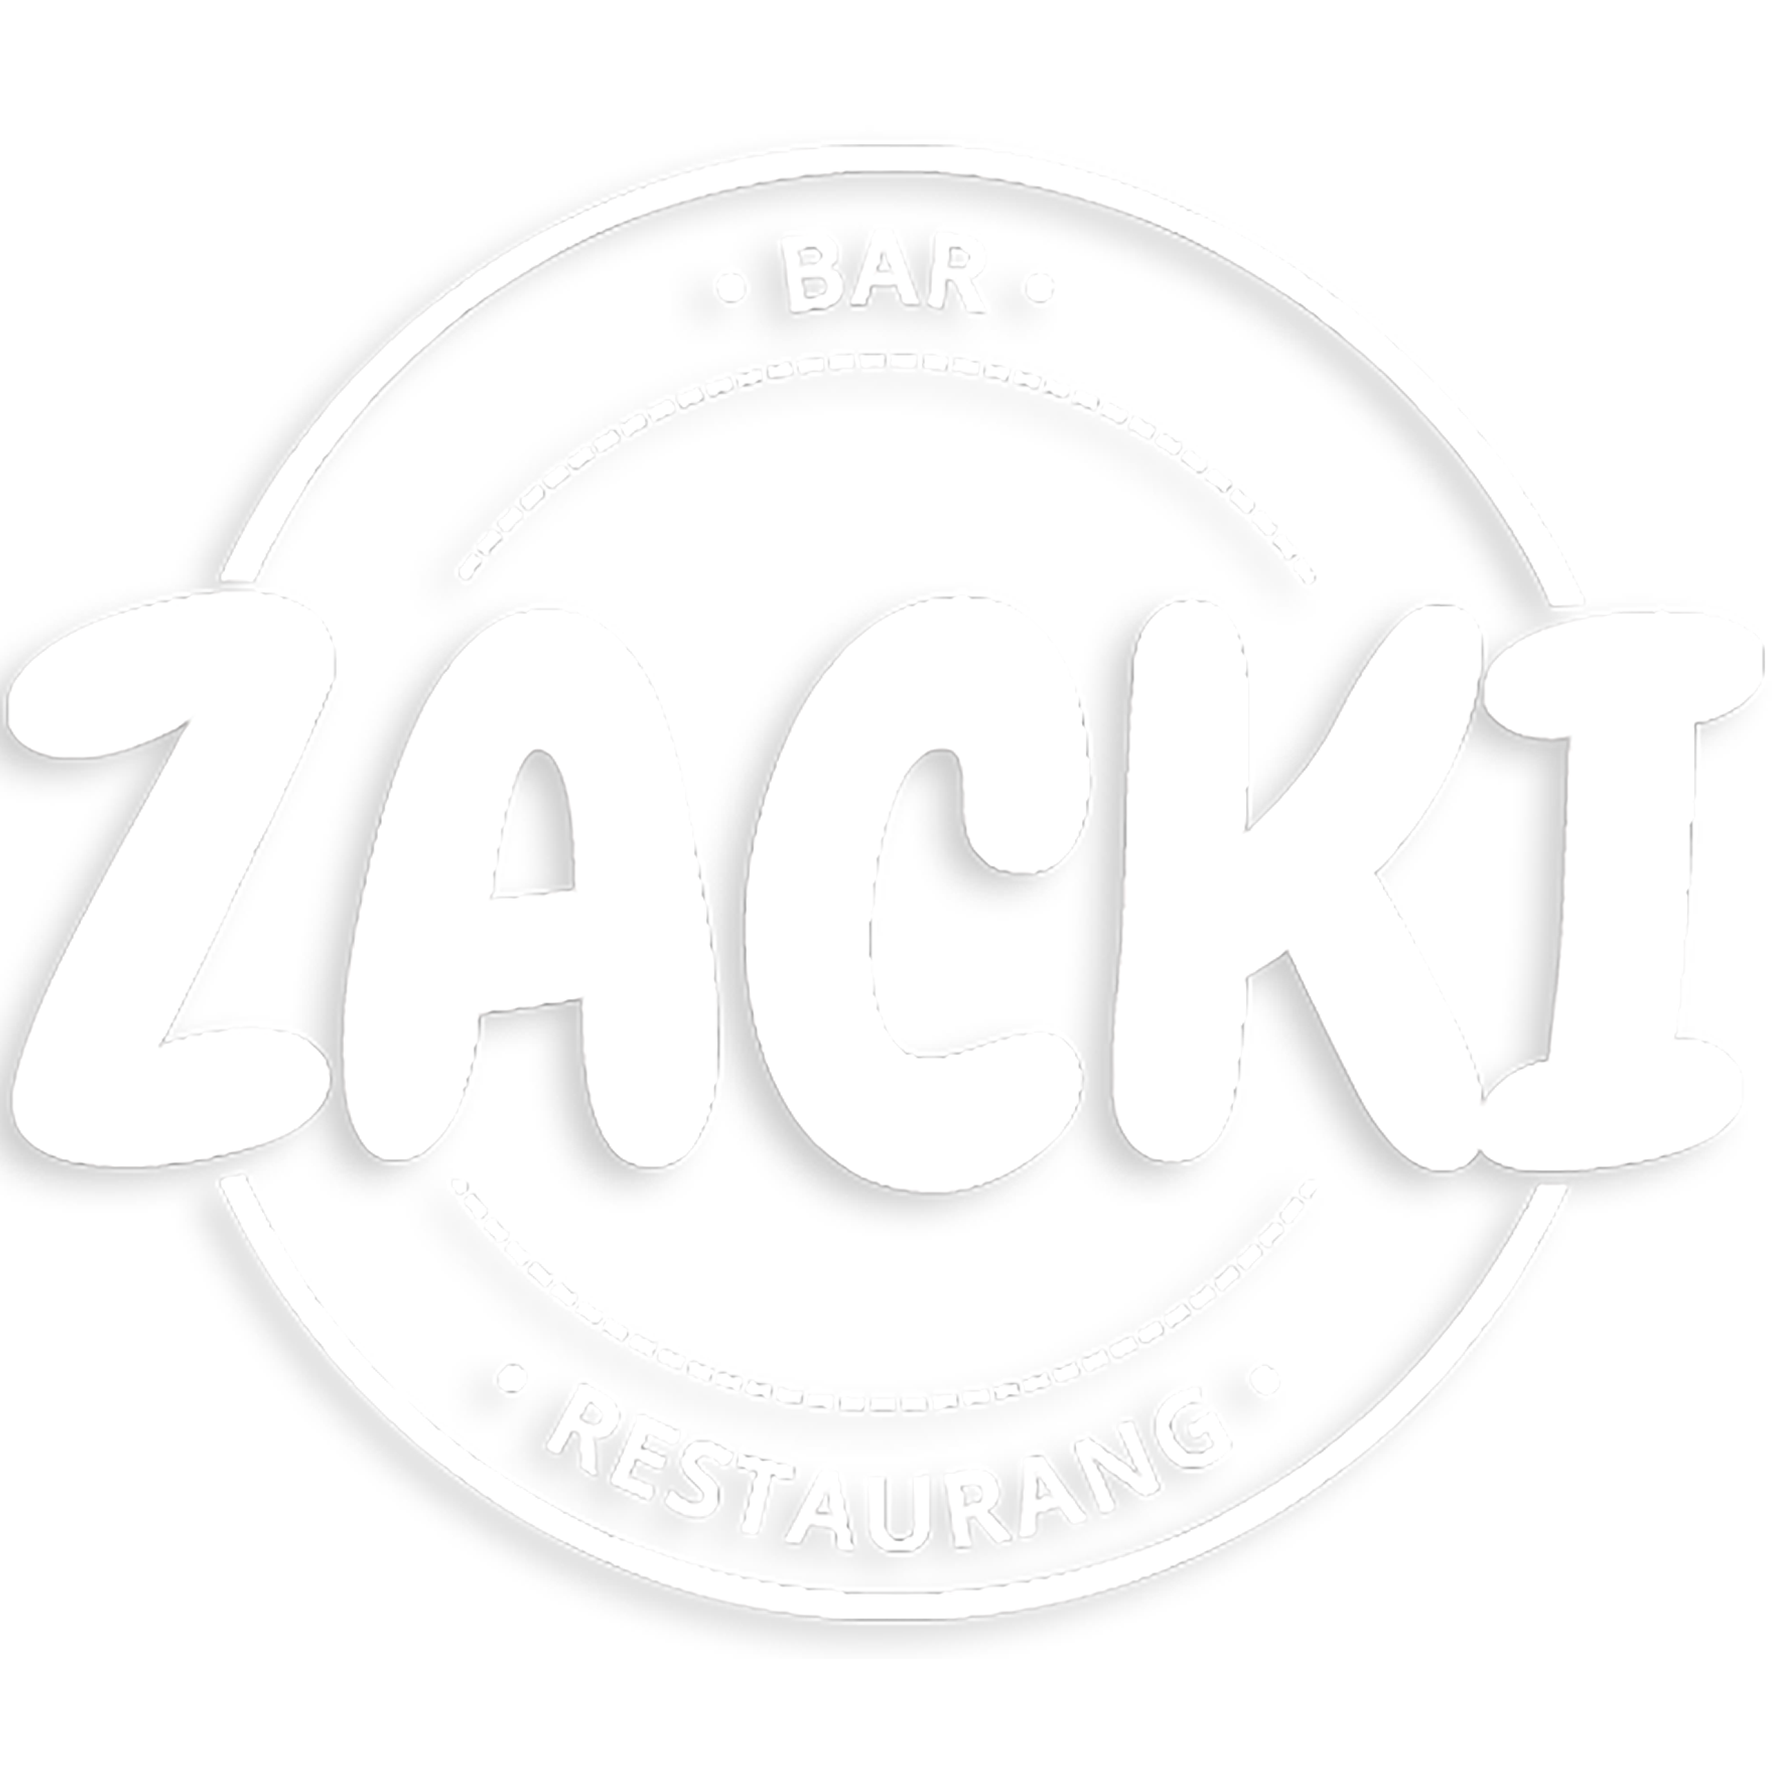 Zakis bar logo